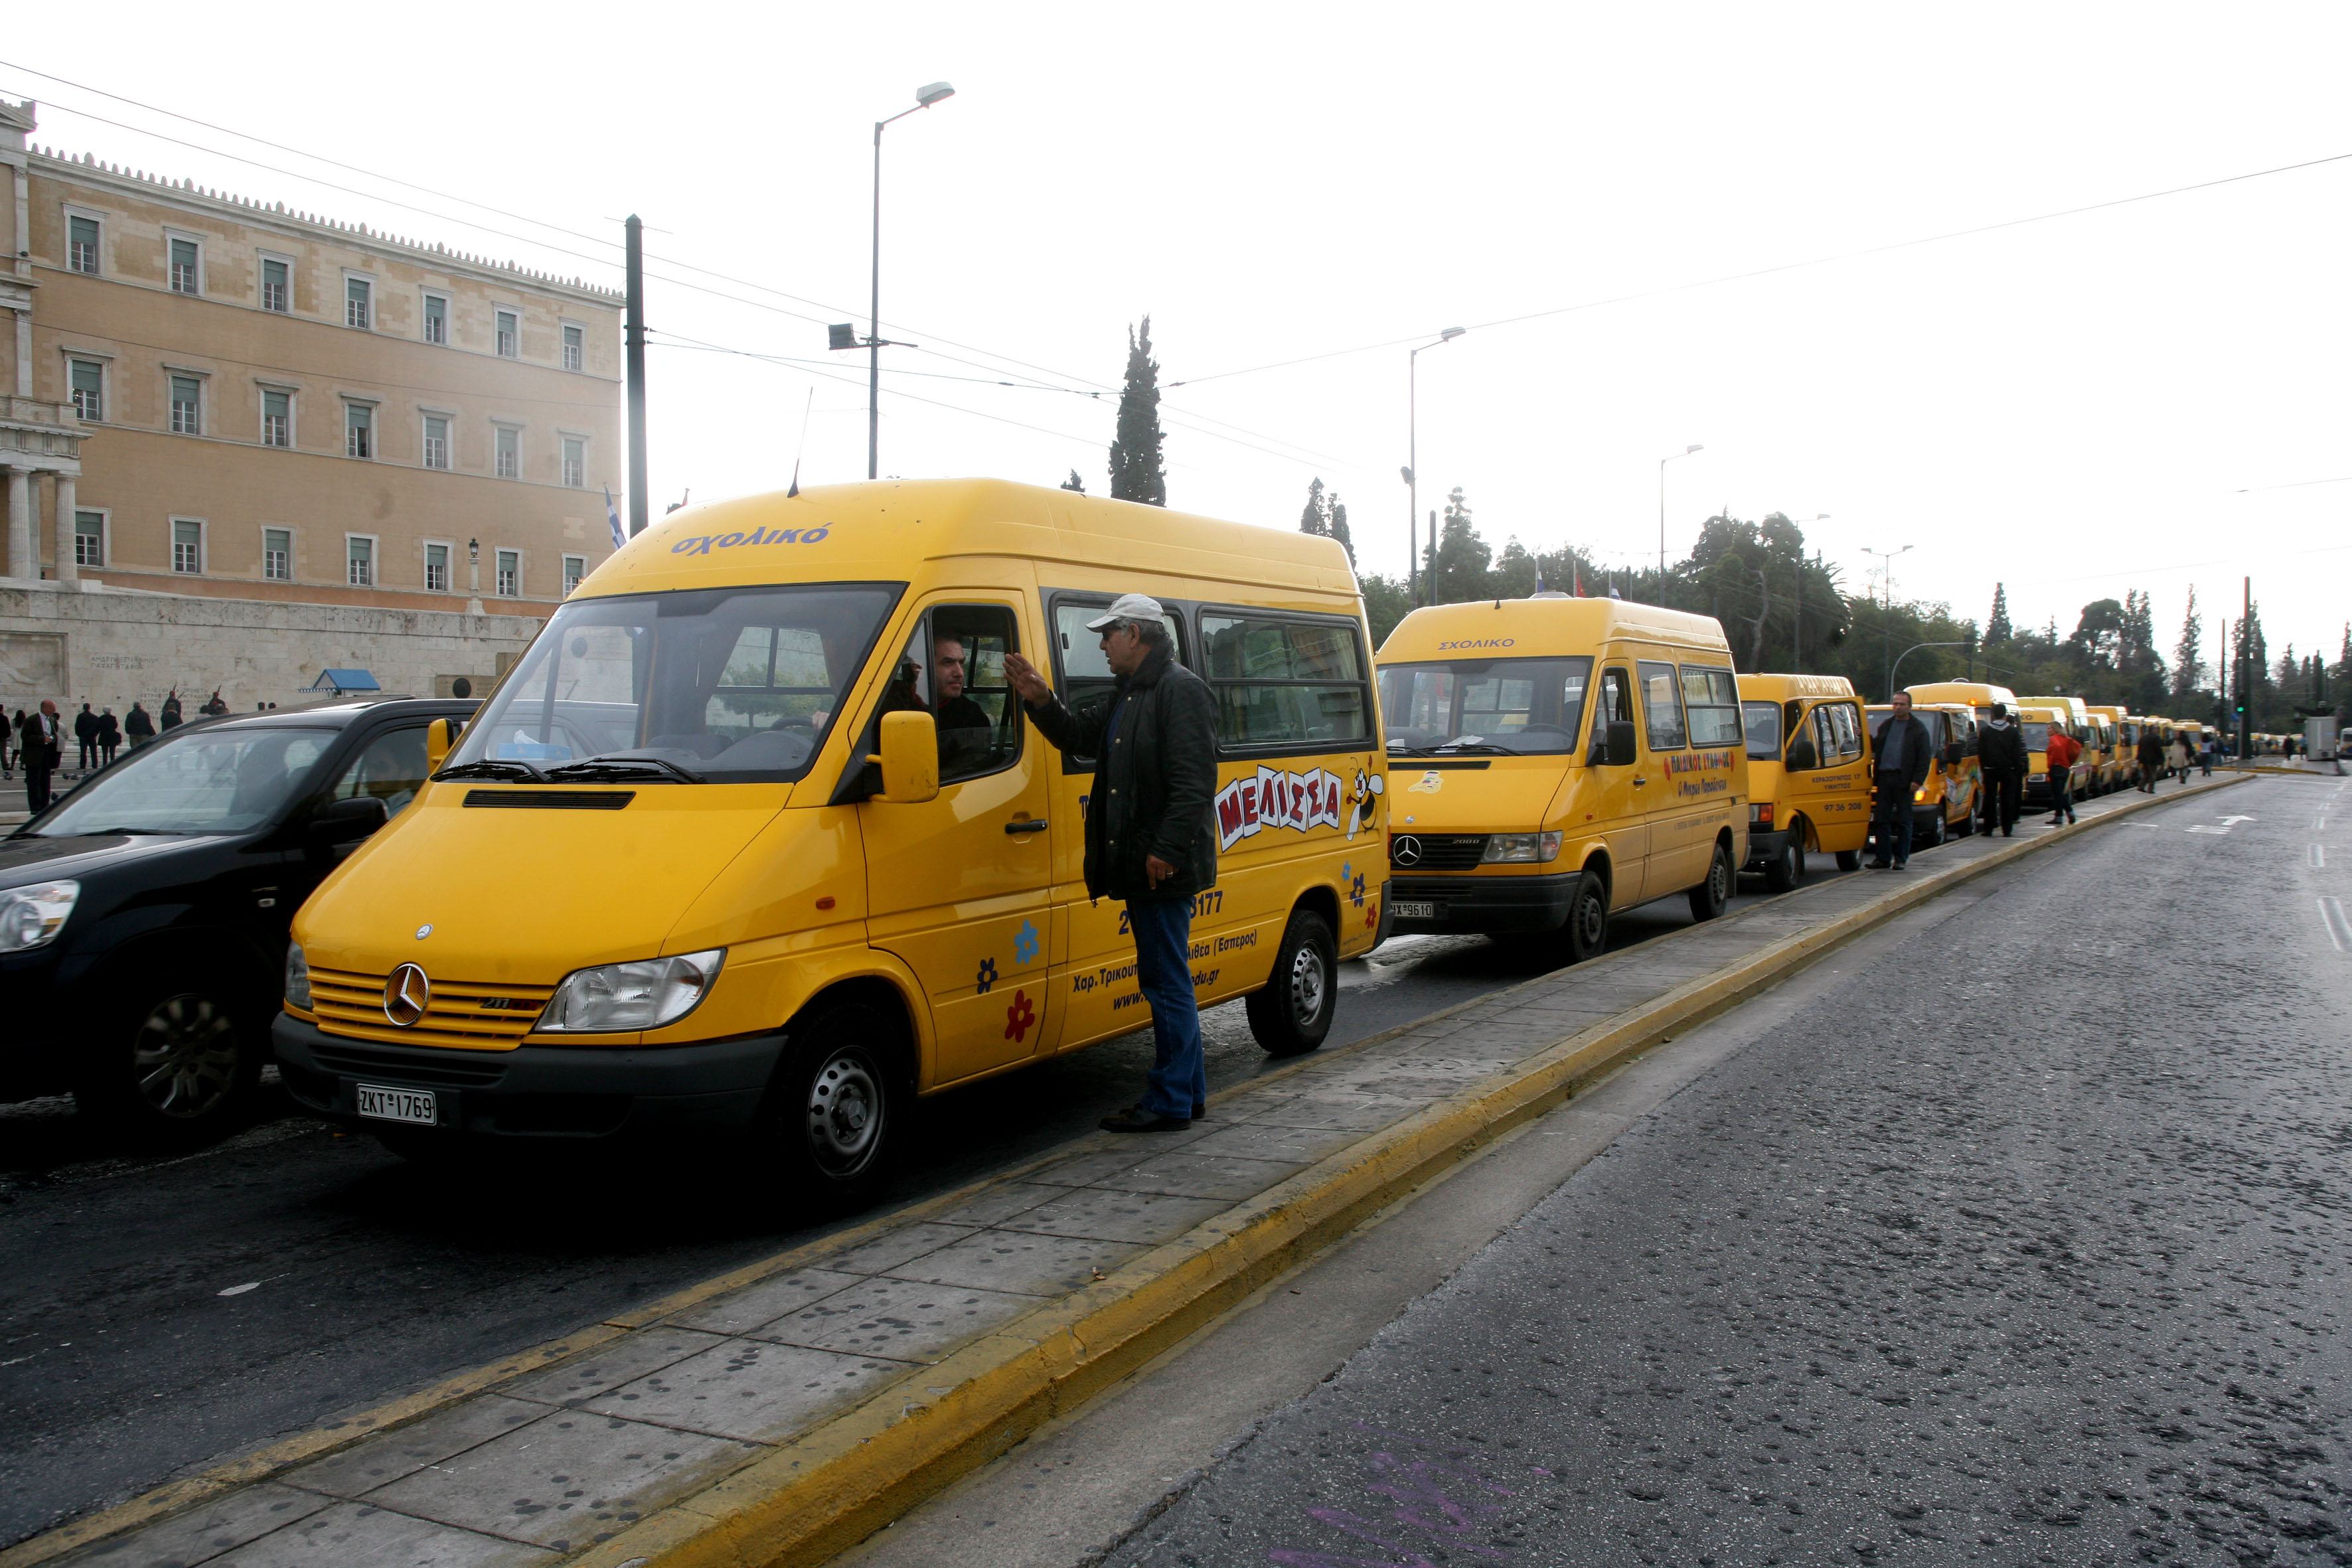 Προμήθεια νέων επαναστατικών σχολικών λεωφορείων